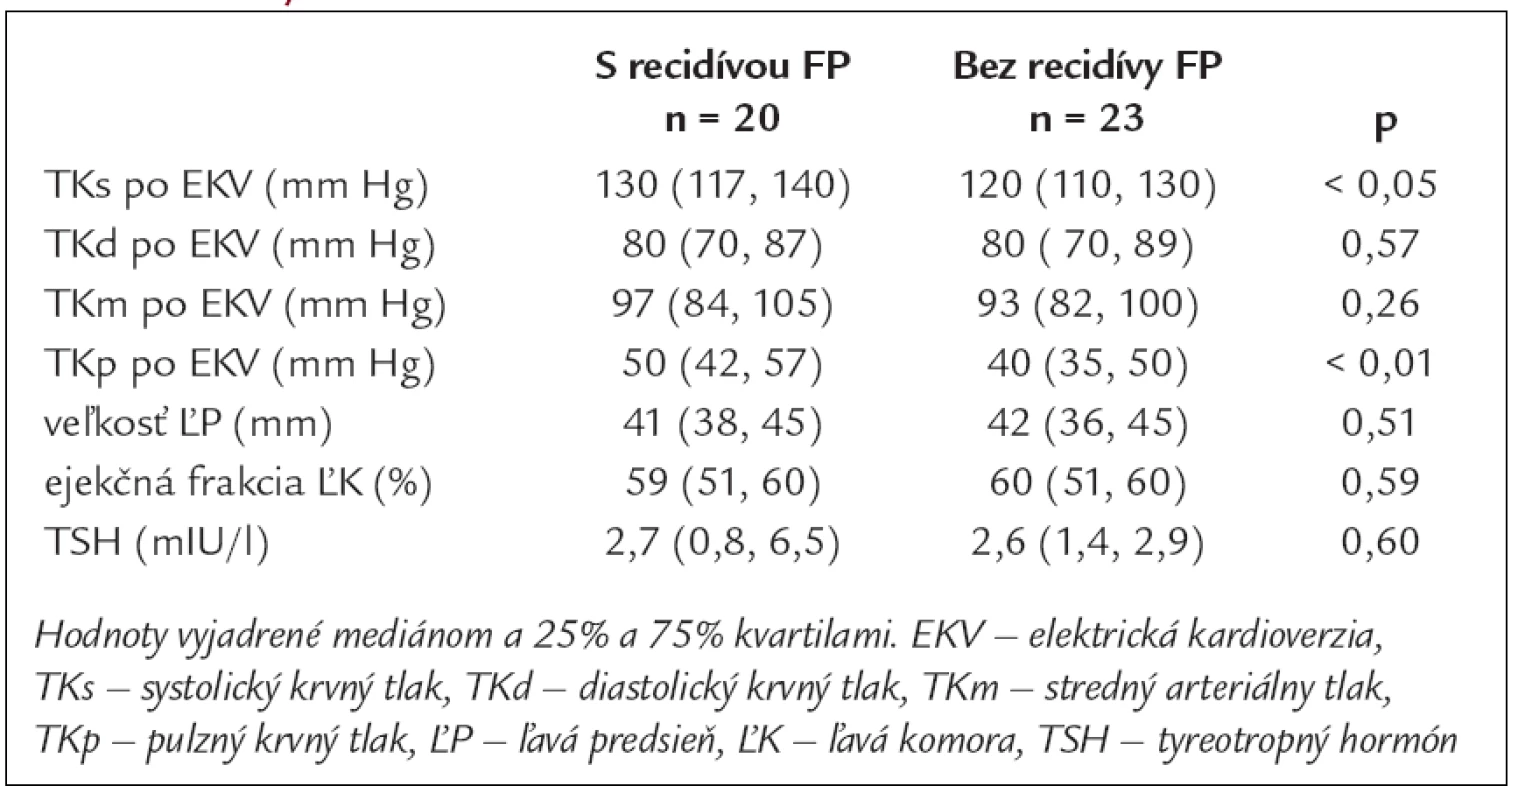 Priemerné hodnoty krvného tlaku, echokardiografických parametrov a TSH v skupinách pacientov s recidívou FP a bez recidívy FP.